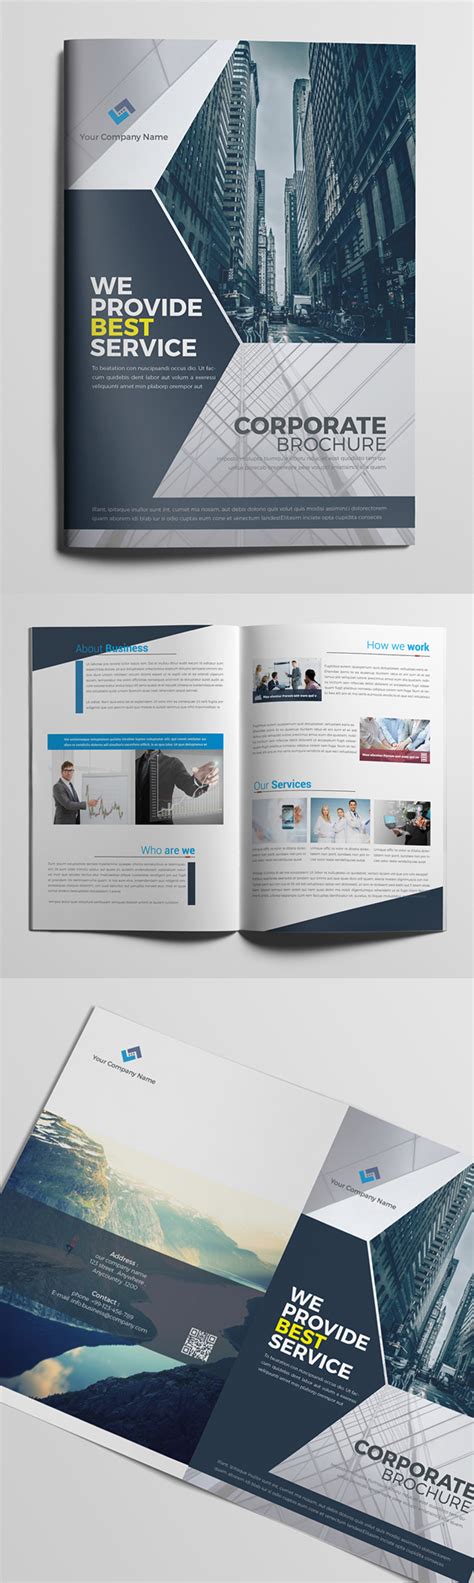 上海企业画册设计 - 锐森广告 - 精致、设计